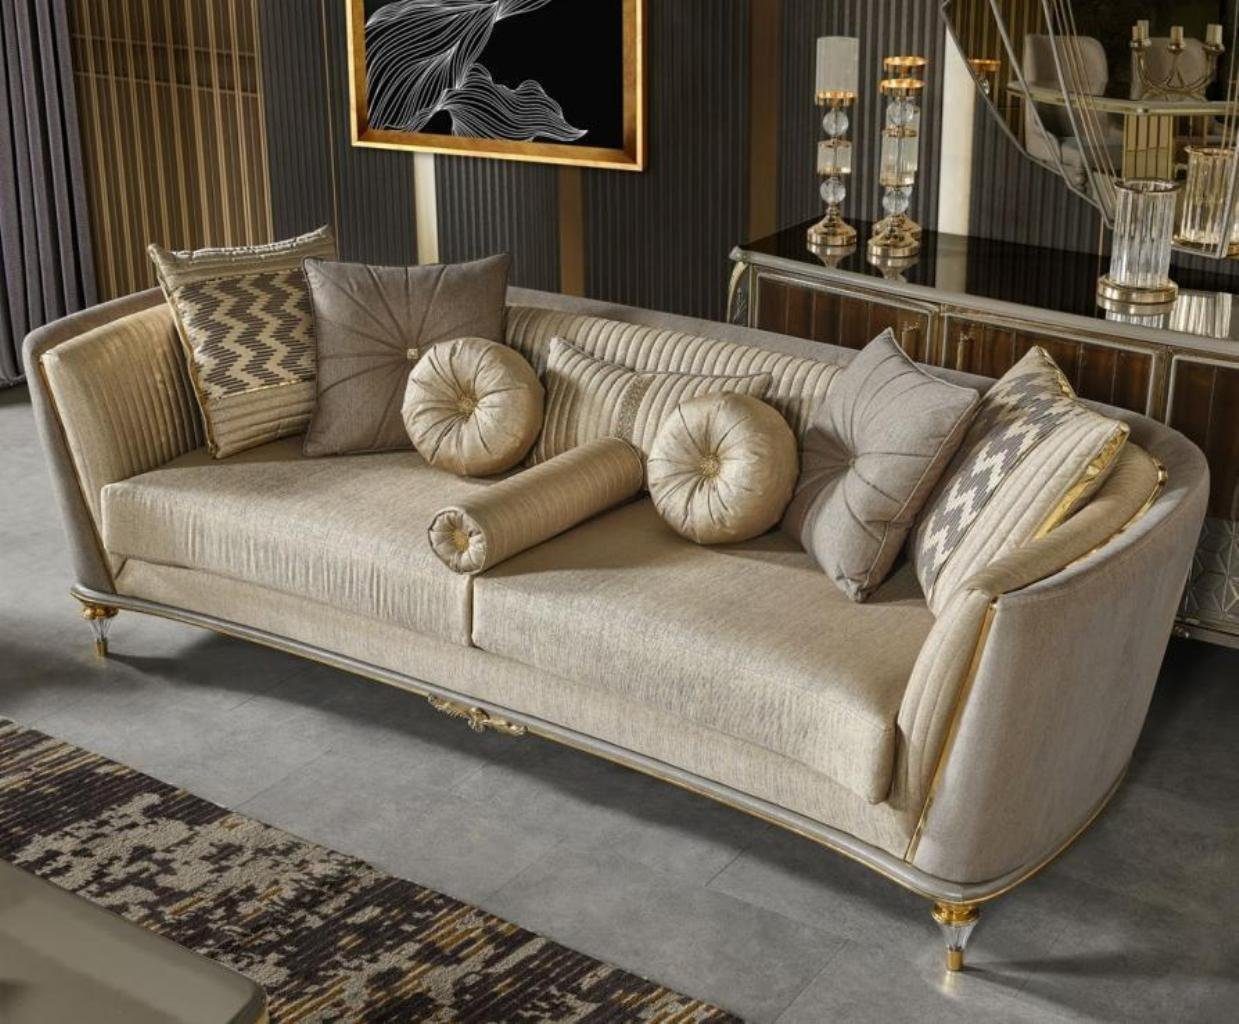 JVmoebel 3-Sitzer Dreisitzer Stoffsofas Sofa 3 Sitzer Beige Luxus Couchen Stoff Couch, 1 Teile, Made in Europa